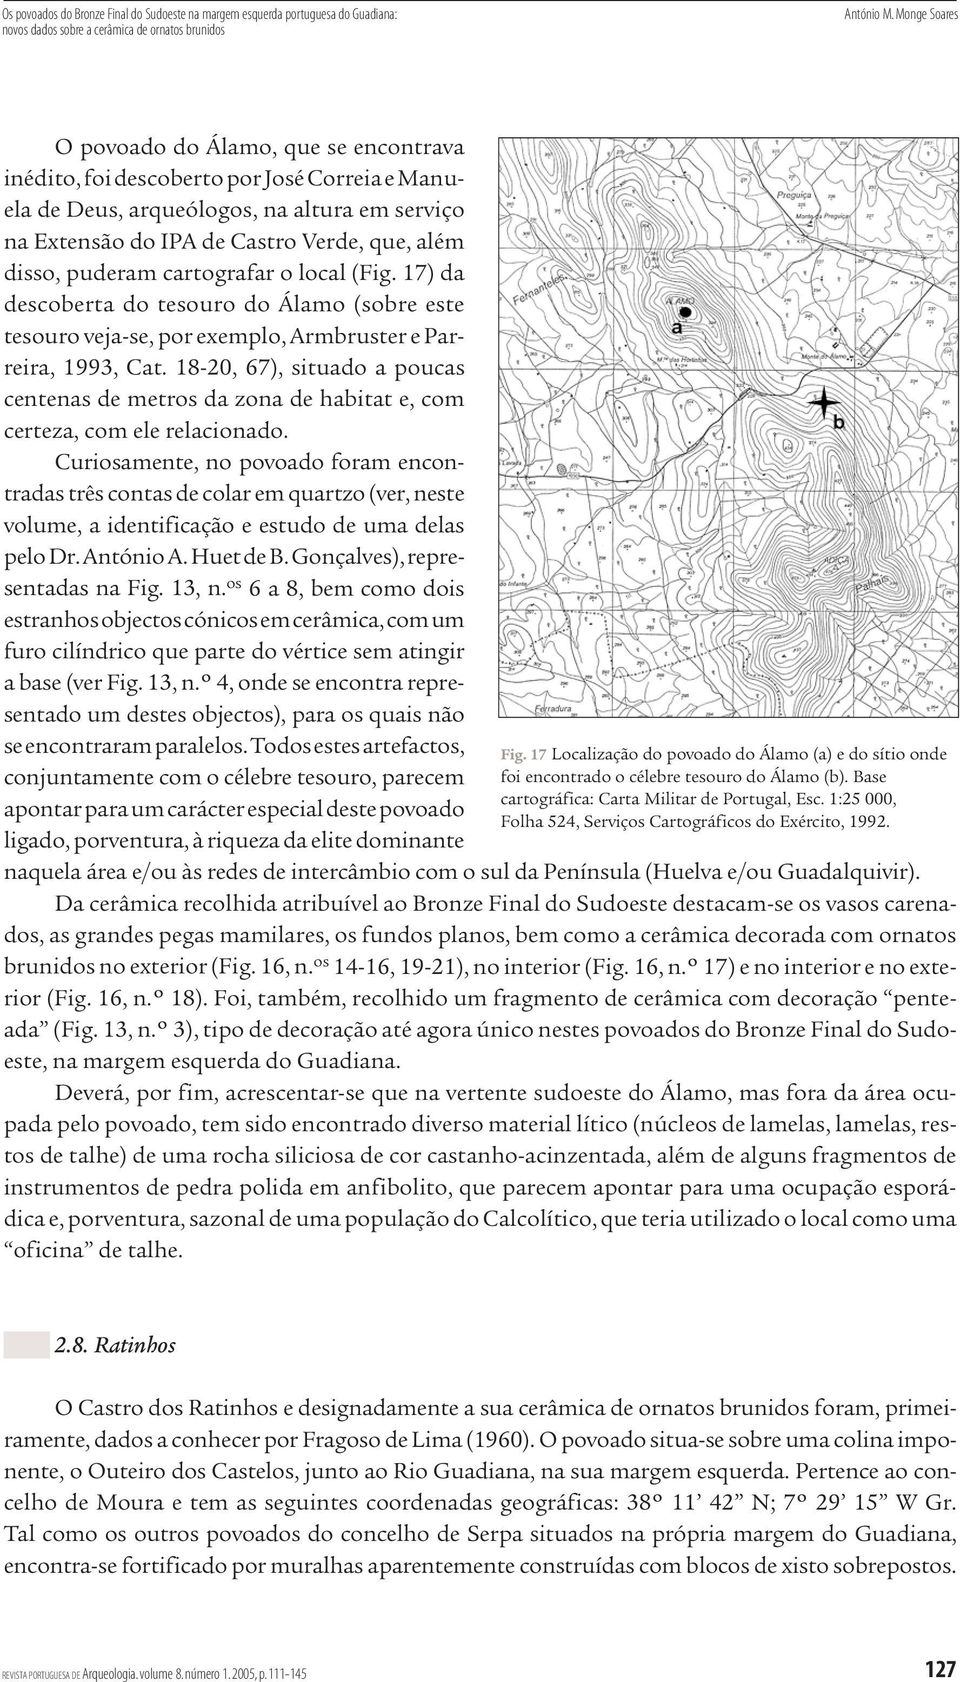 puderam cartografar o local (Fig. 17) da descoberta do tesouro do Álamo (sobre este tesouro veja-se, por exemplo, Armbruster e Parreira, 1993, Cat.